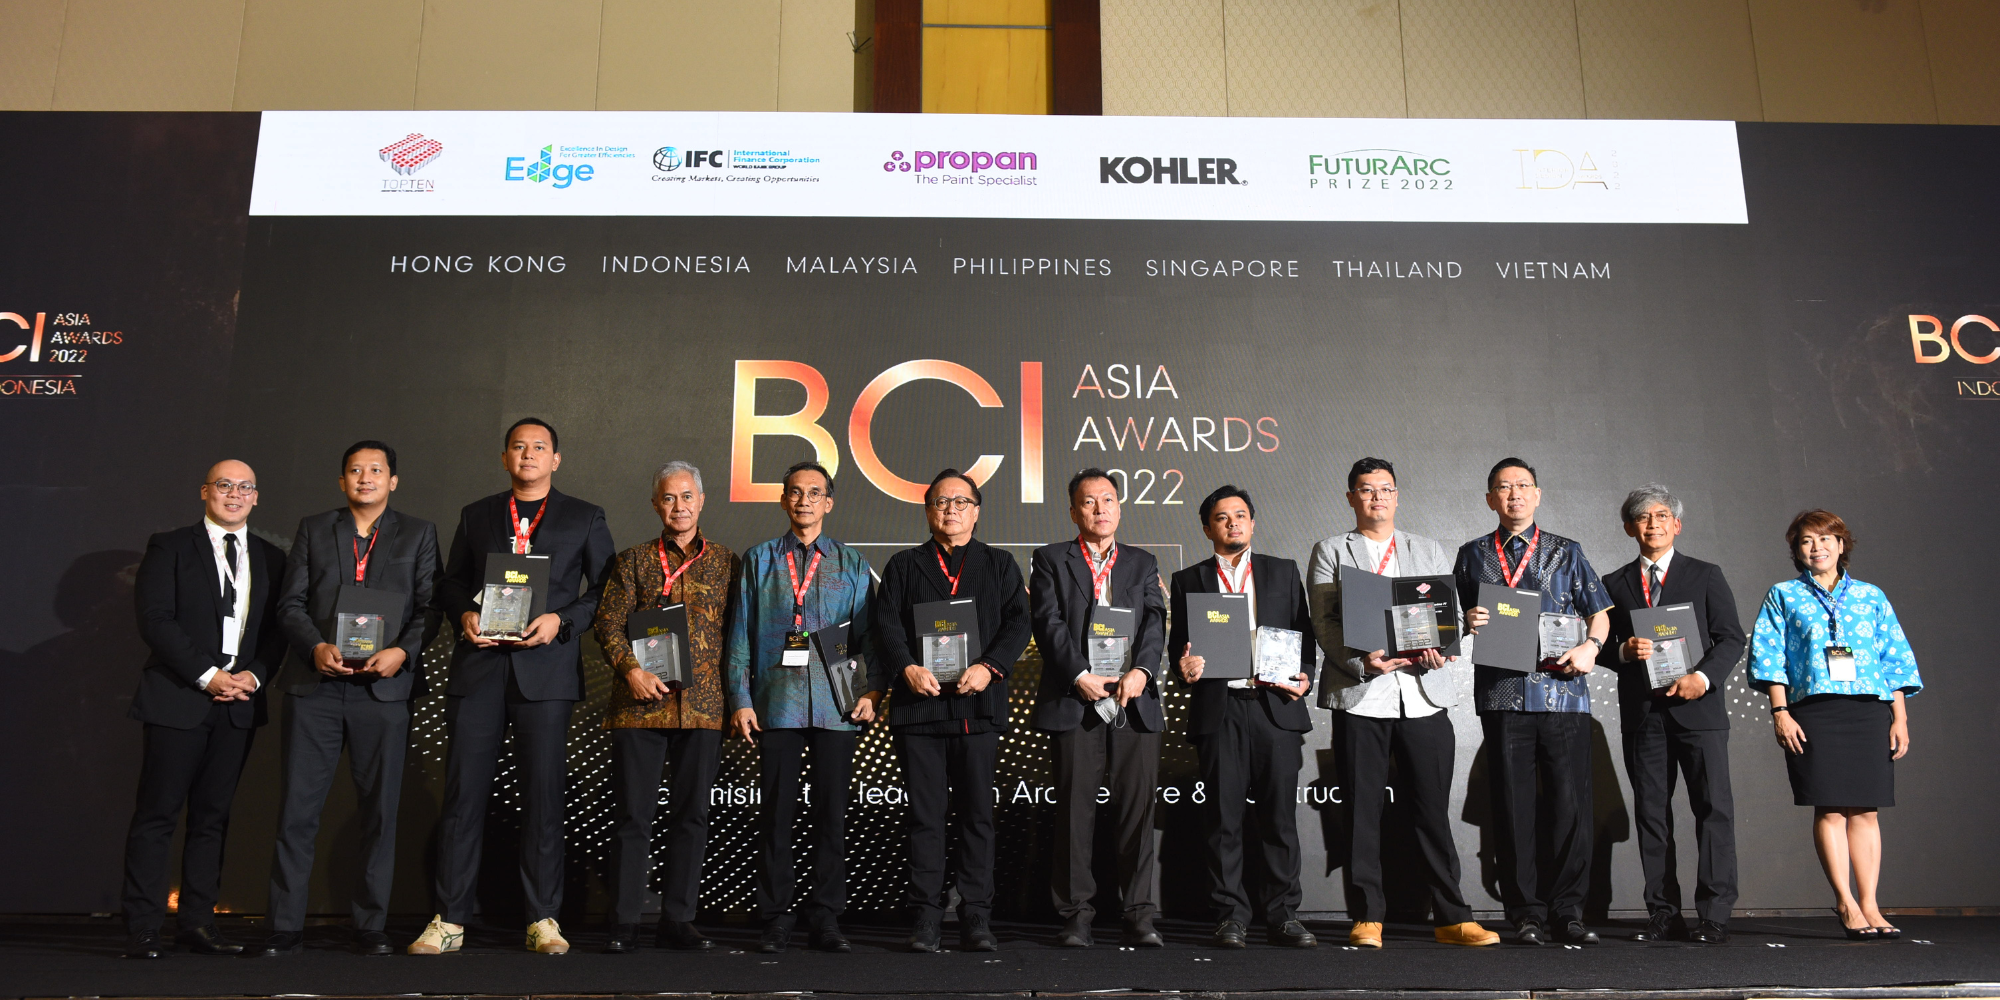 ภาพเด่นสำหรับ “BCI Asia Awards Indonesia 2022”